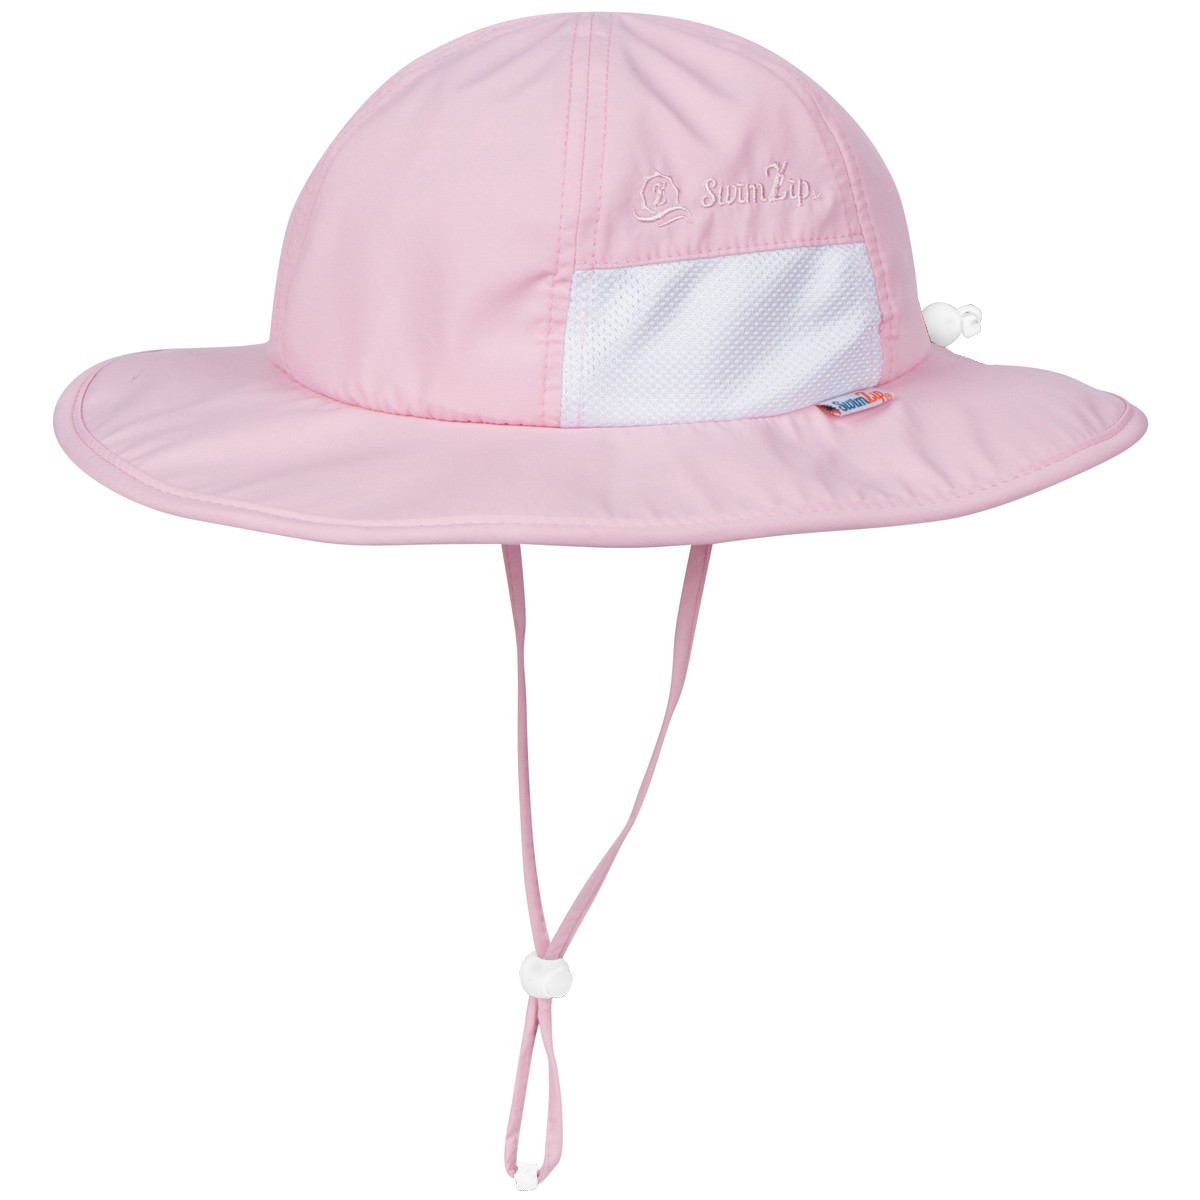 Kids Sun Hats, Wide Brim Hats, Sun Protection Beach Hat